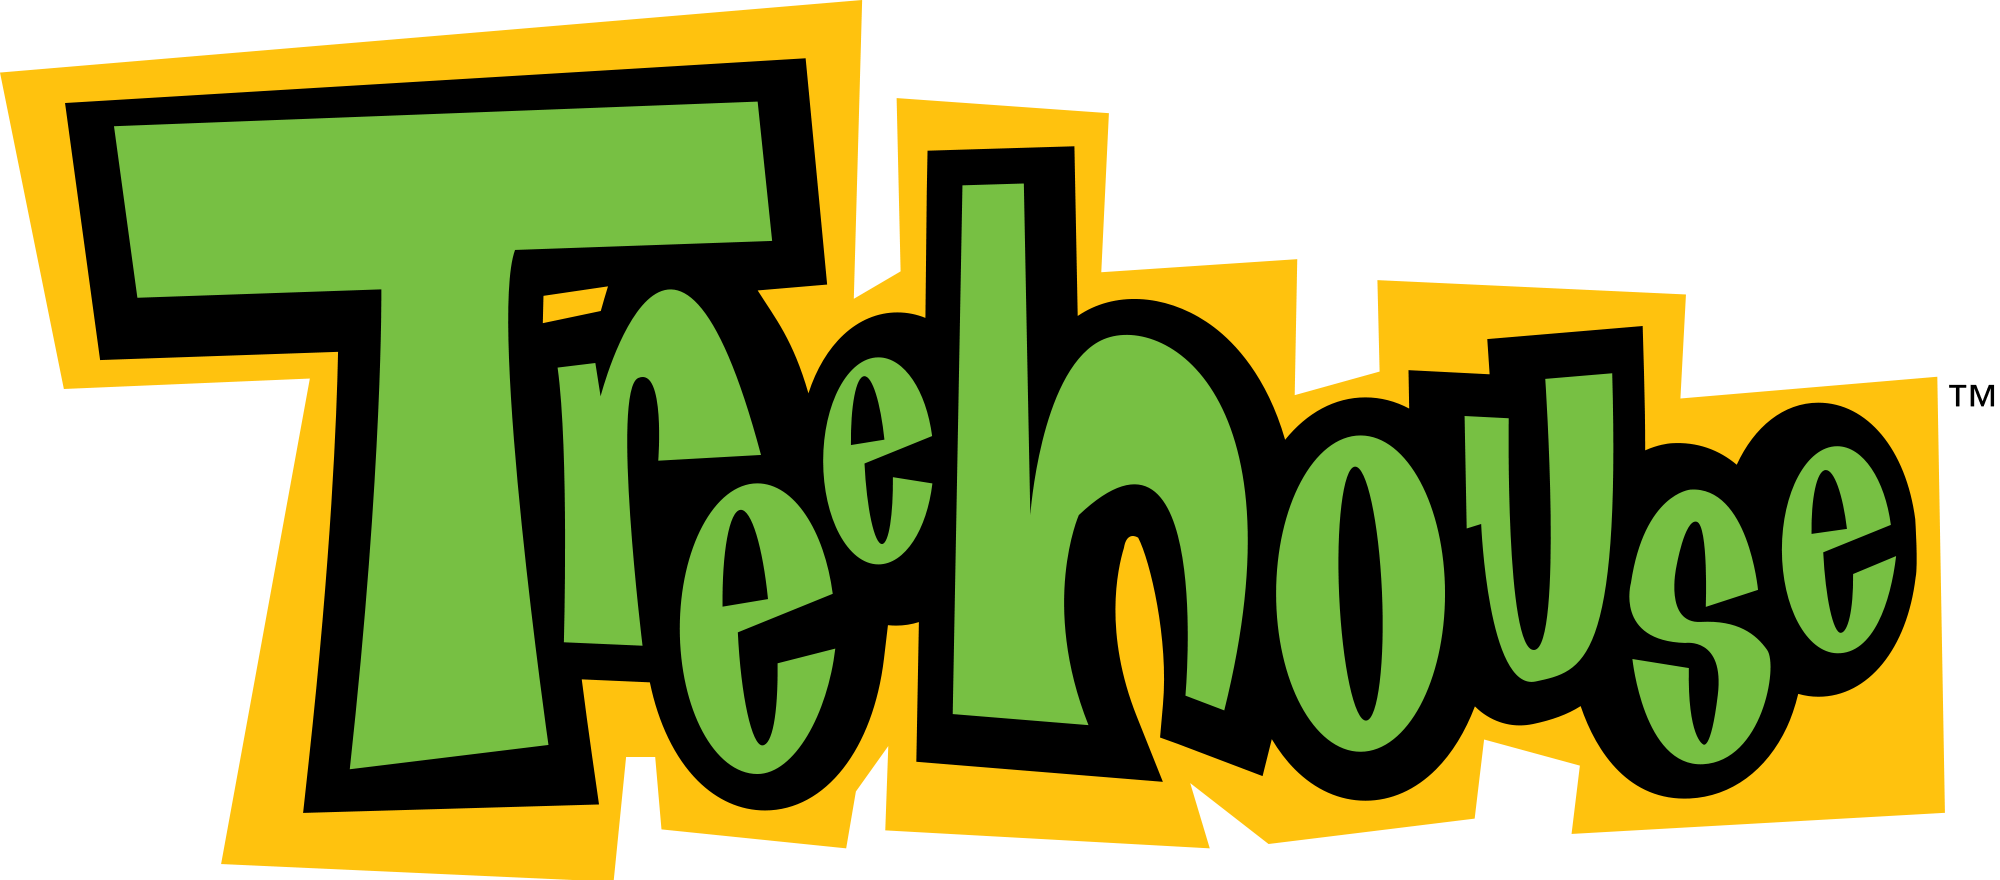 Cinetoon Logo - TreehouseTV | Dream Logos Wiki | FANDOM powered by Wikia